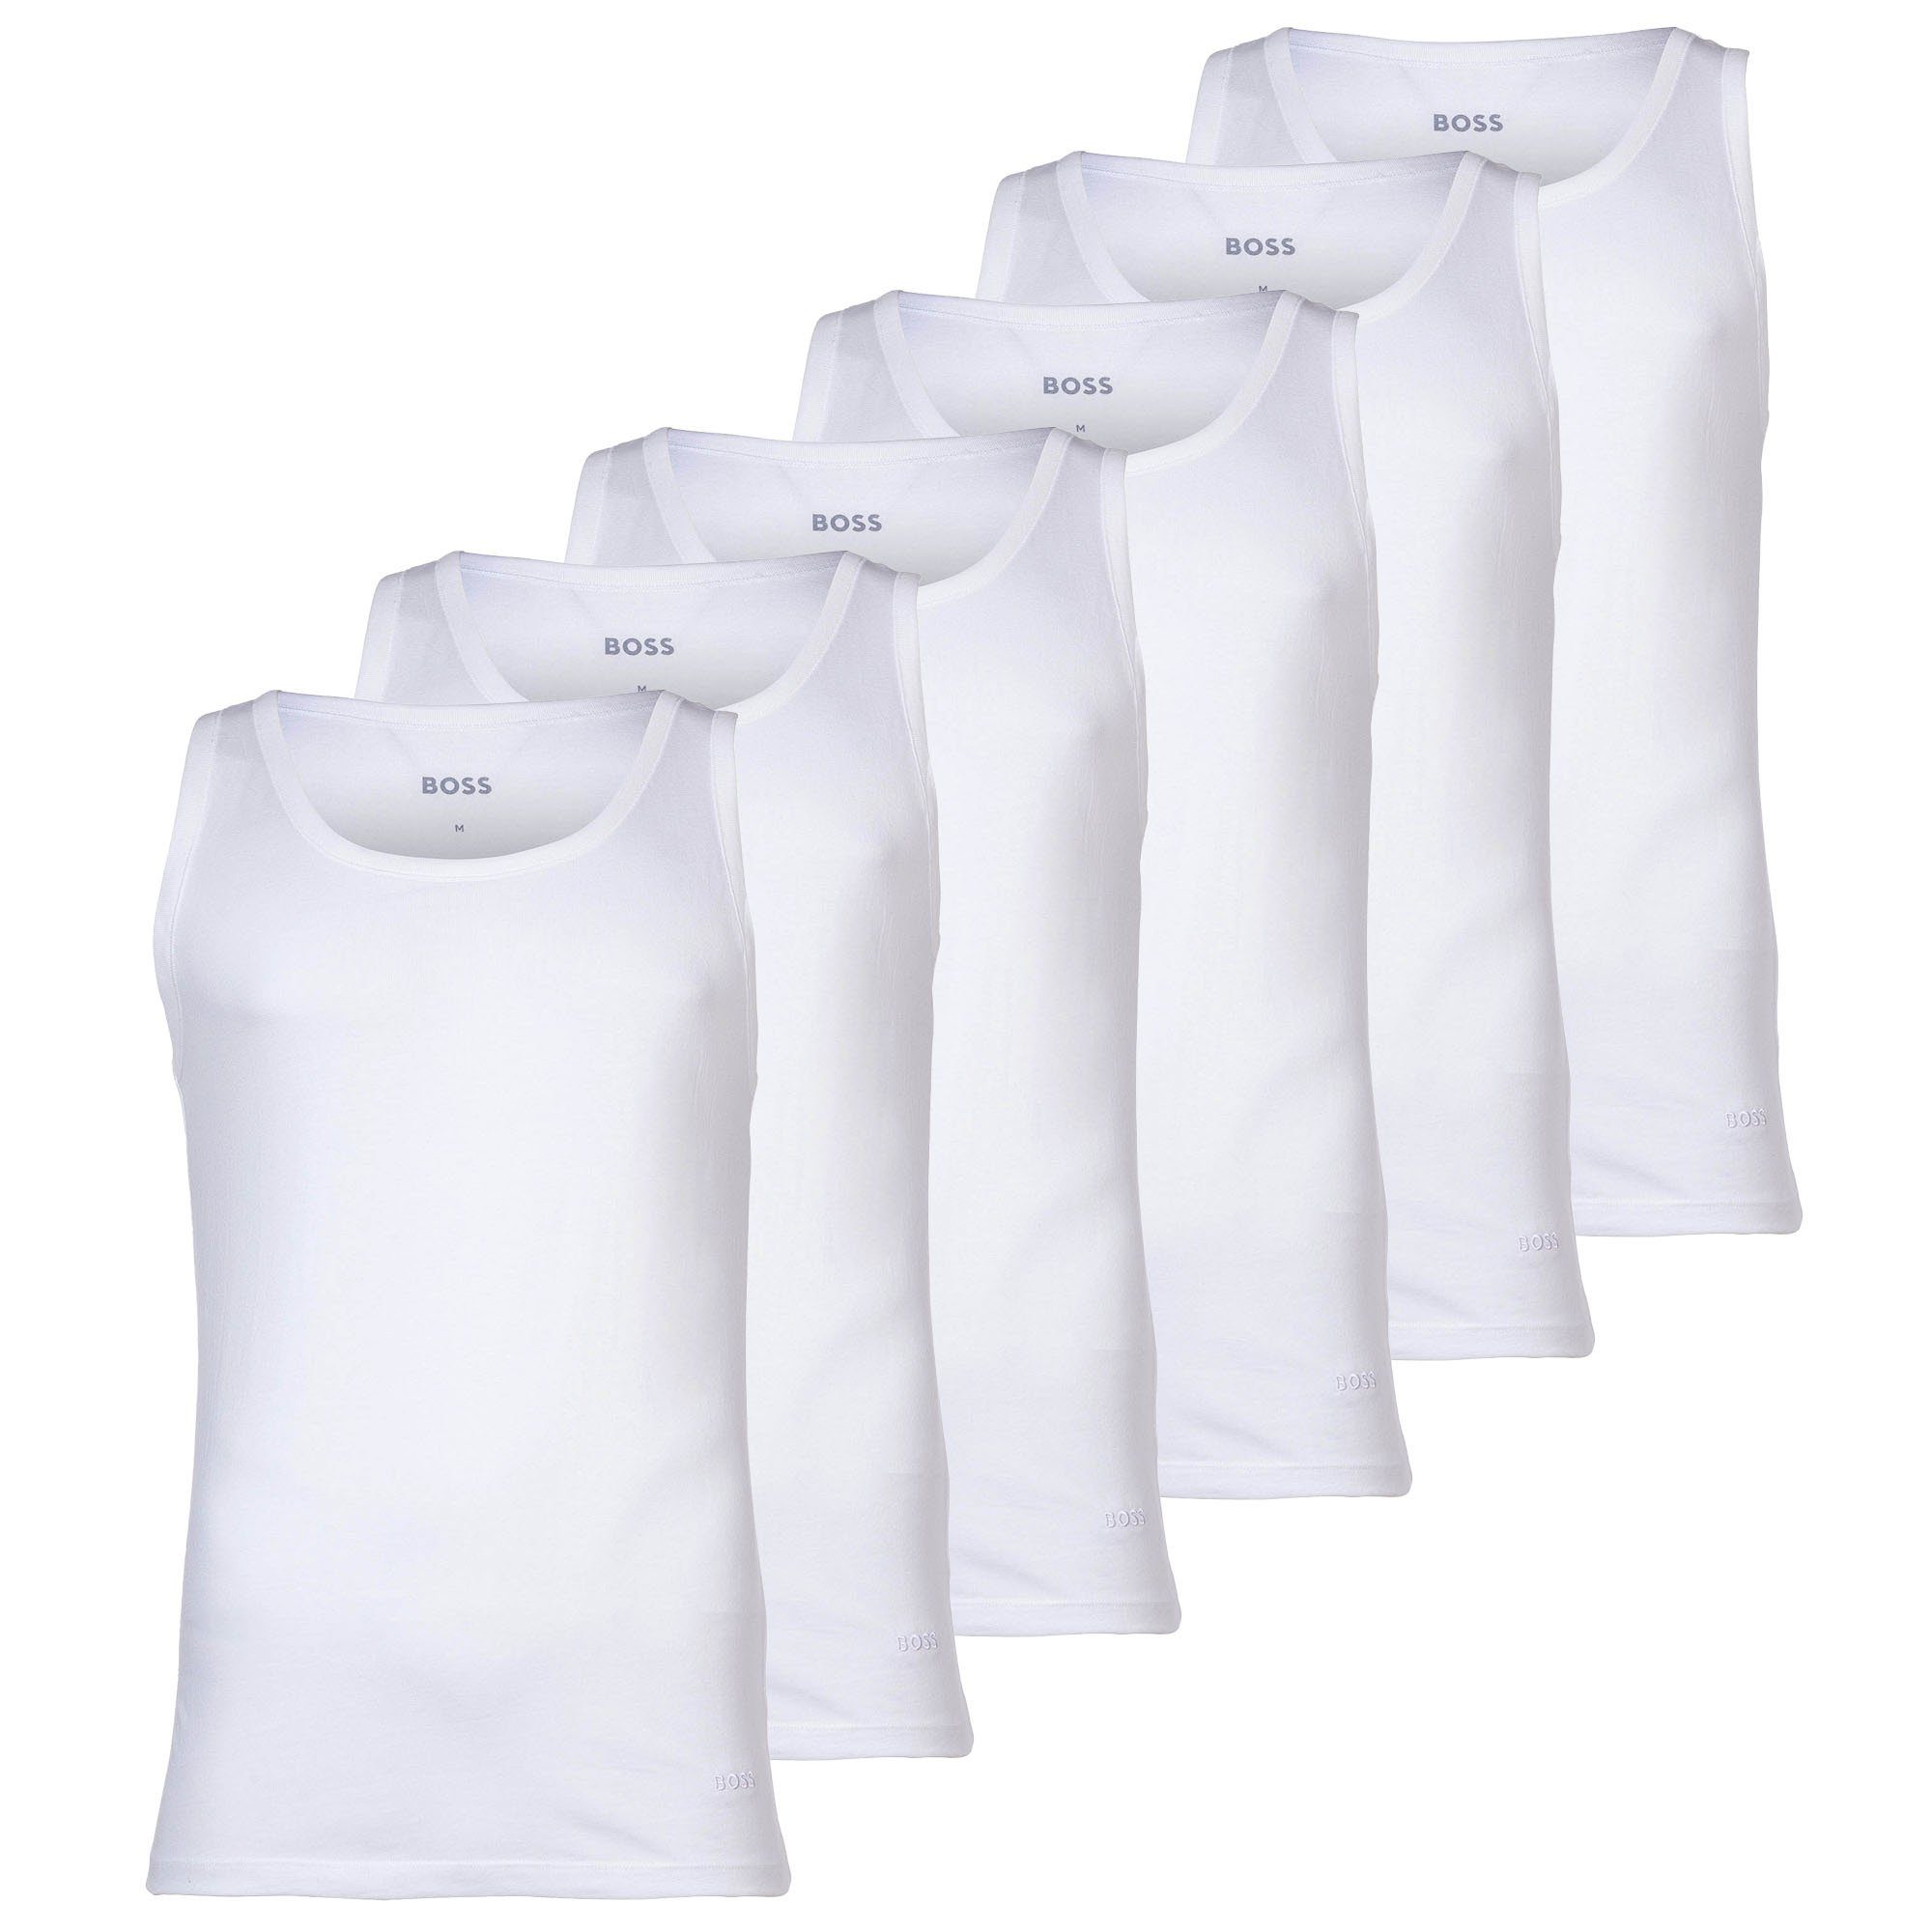 Unterhemd 6P - Briefs Weiß Slips, Cotton Herren Pack 6er BOSS Power,